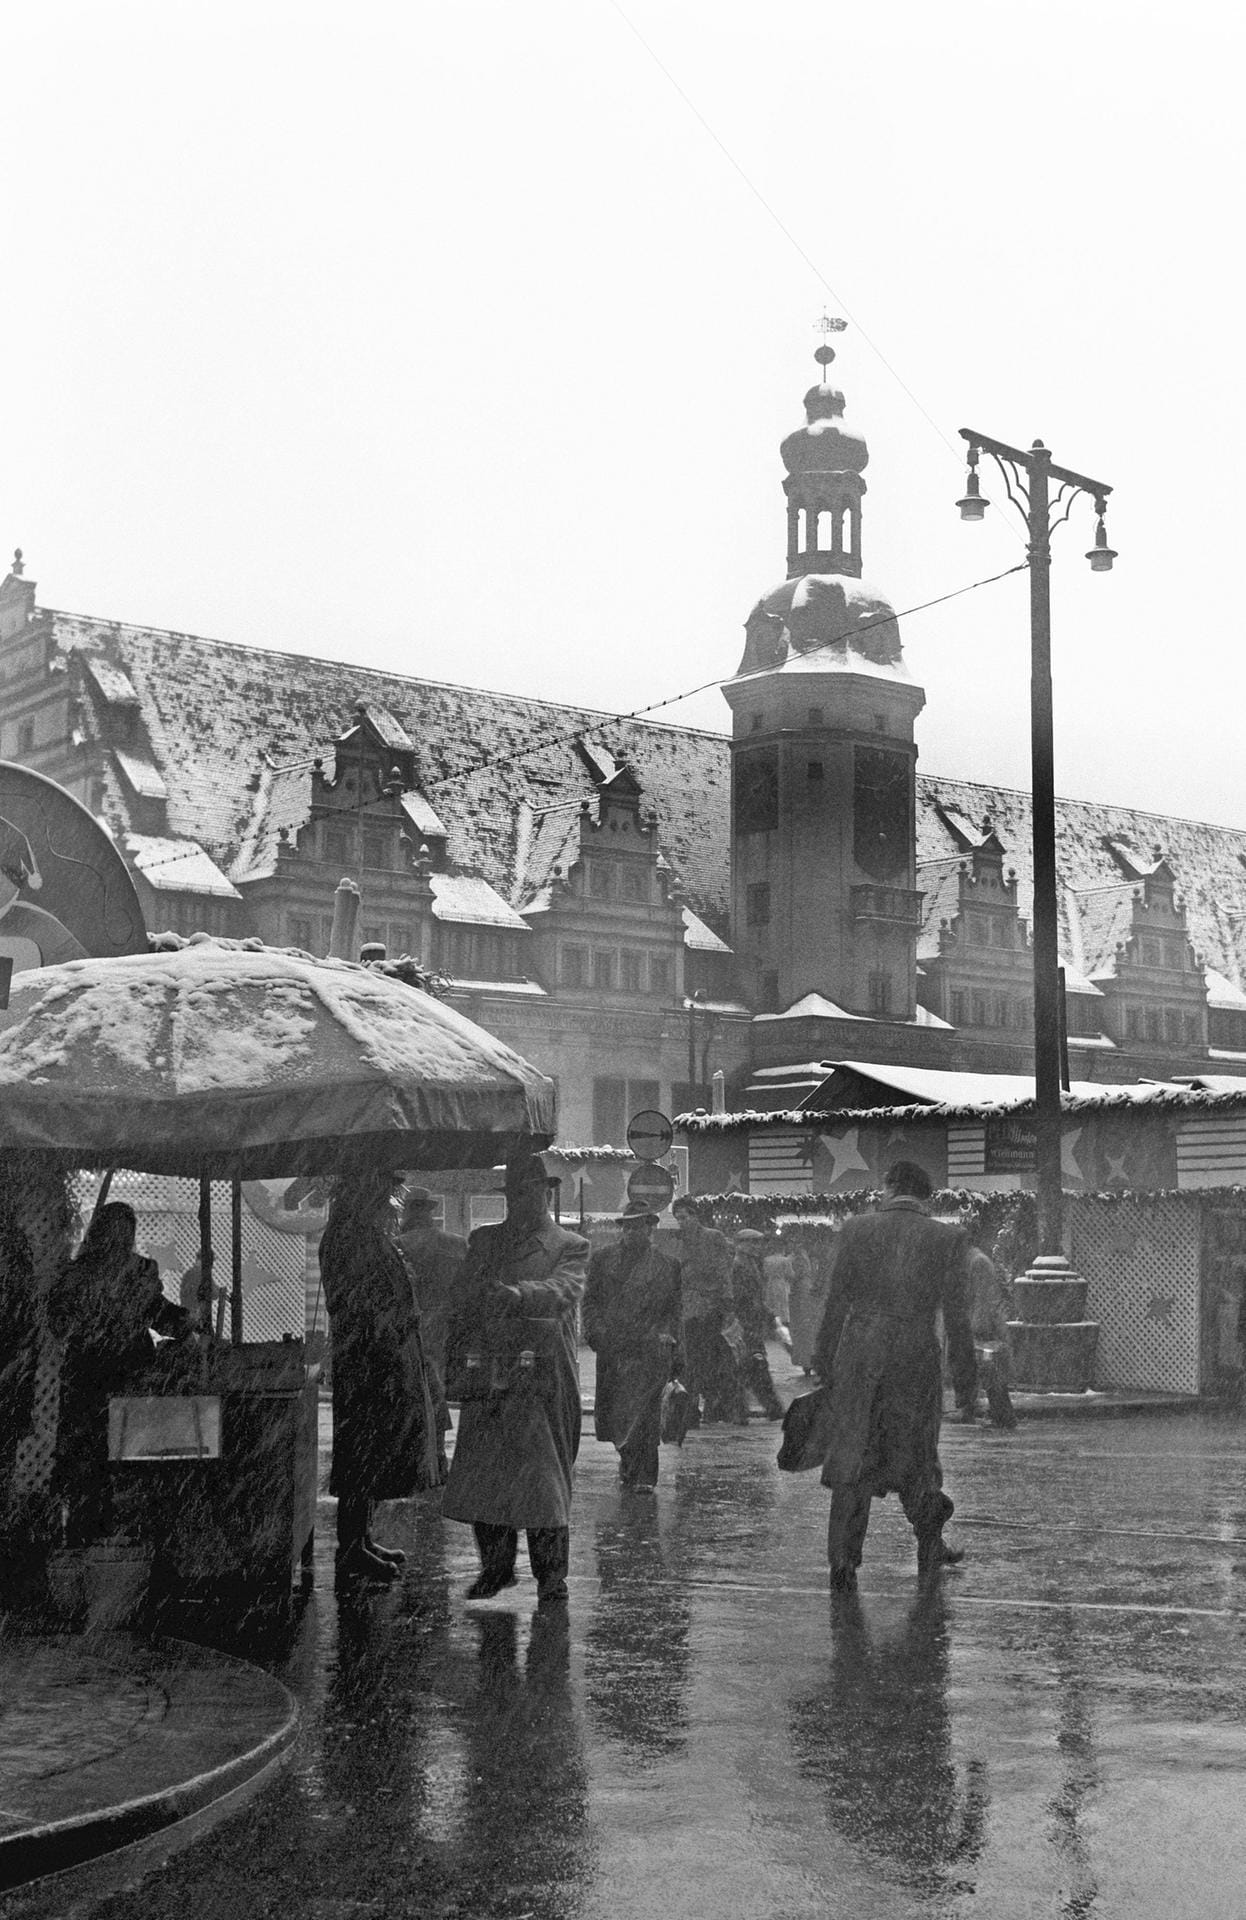 Weihnachtsmarkt in Leipzig: Karussells und Buden stehen 1956 auf dem Marktplatz. Im Hintergrund das Alte Rathaus.